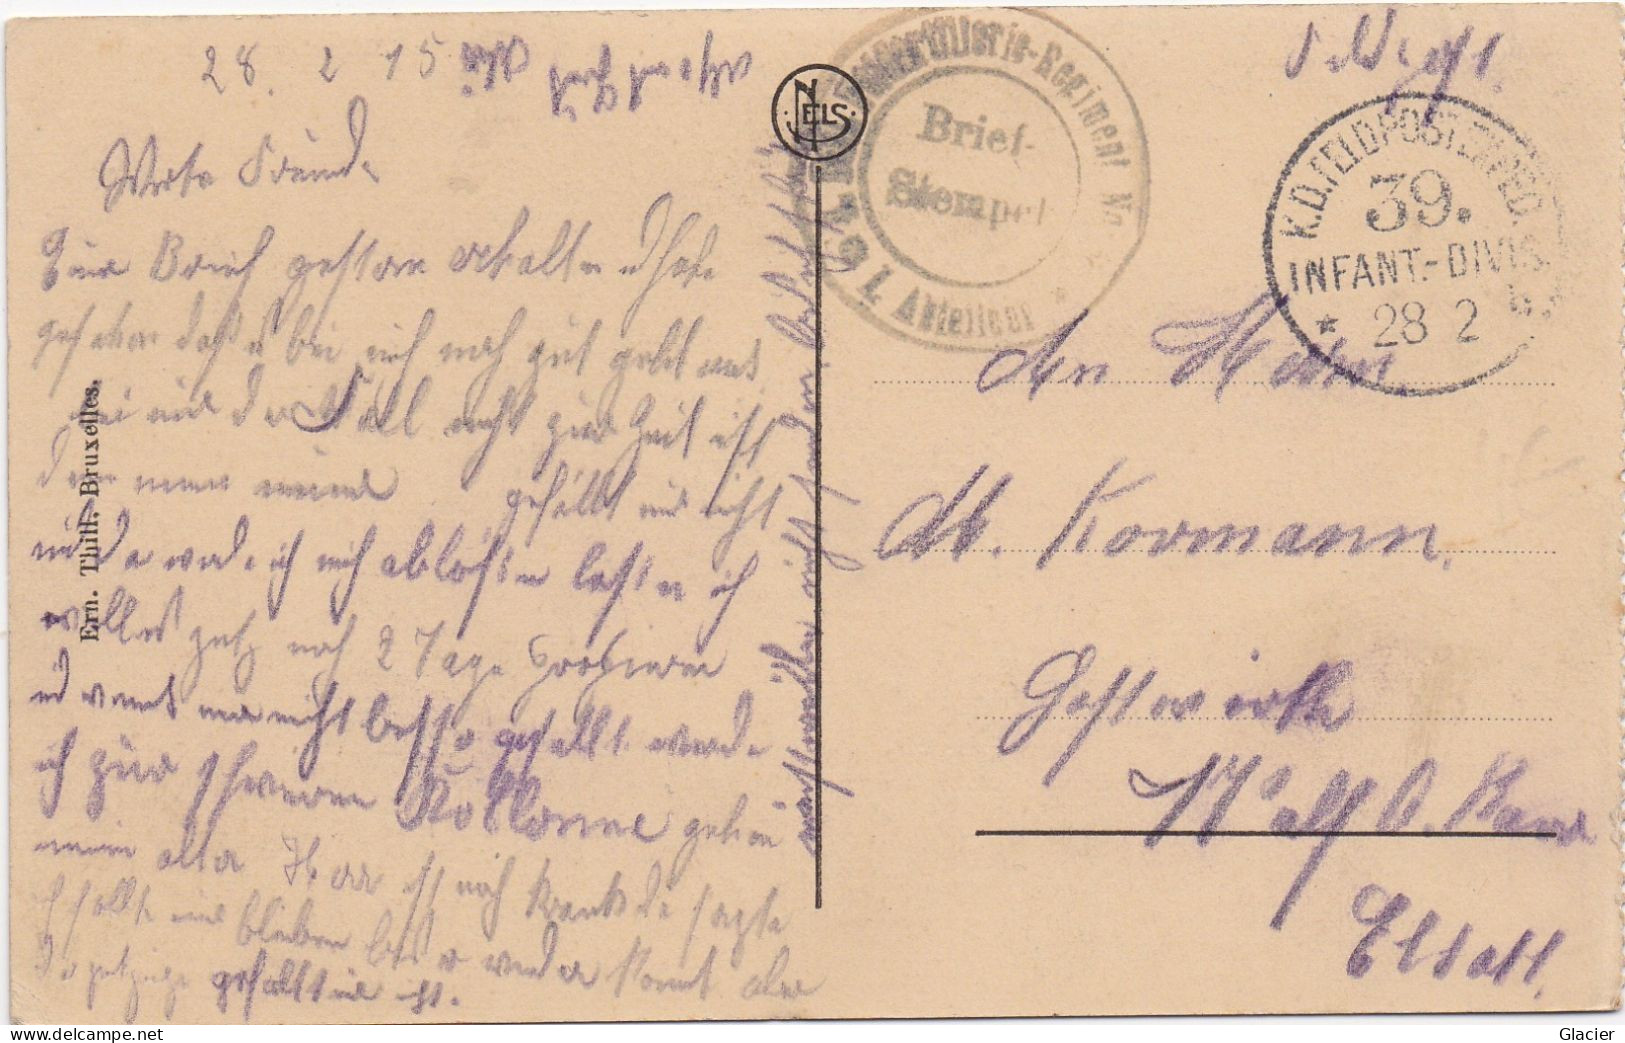 Deutsche Feldpost 1 Weltkrieg - 39 Inf. Div. 28-2-1915 - Karte Ostende - Feldpost (franchise)